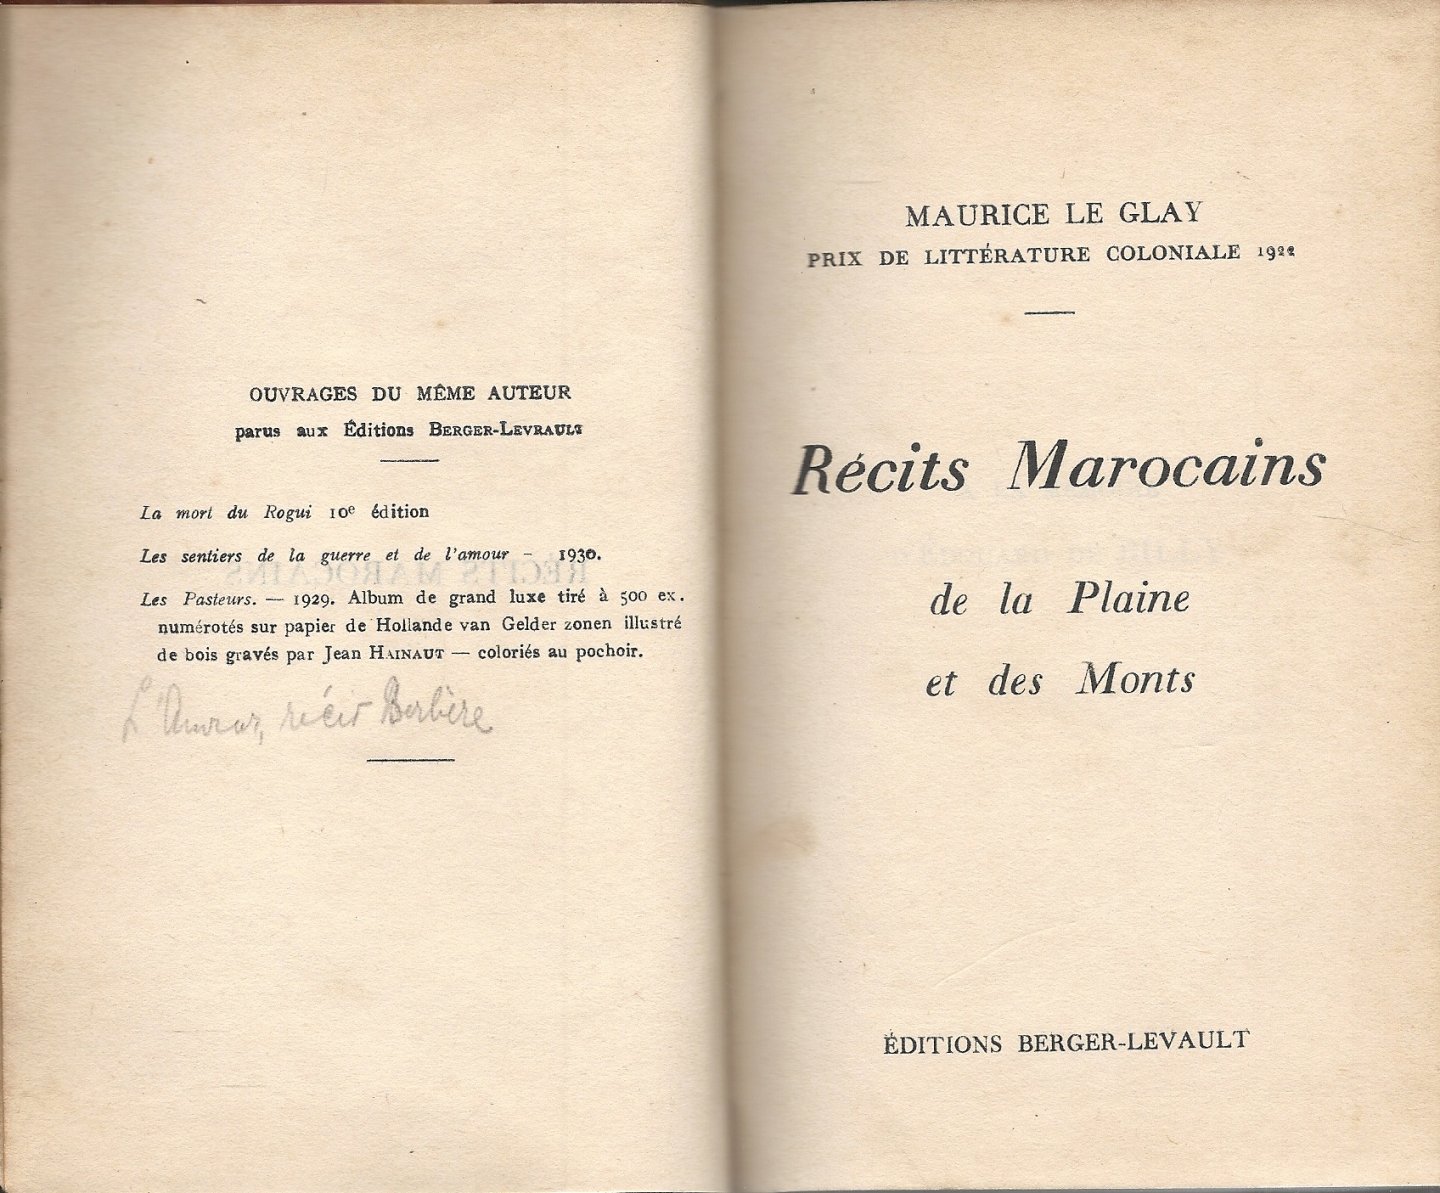 Glay, Maurice le - Récits Marocains de la Plaine et des Monts